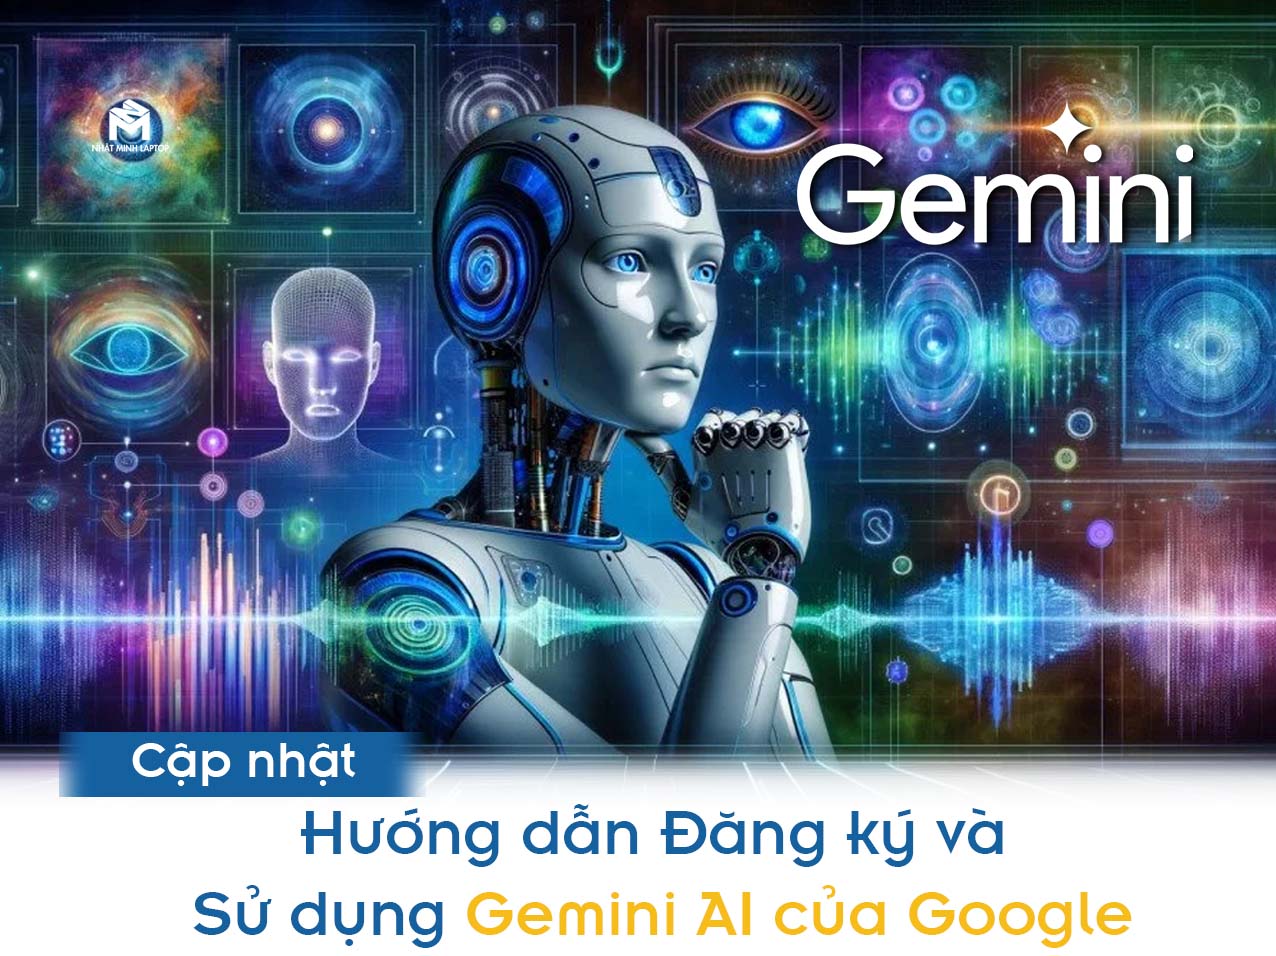 Hướng dẫn Đăng ký và Sử dụng Gemini AI của Google